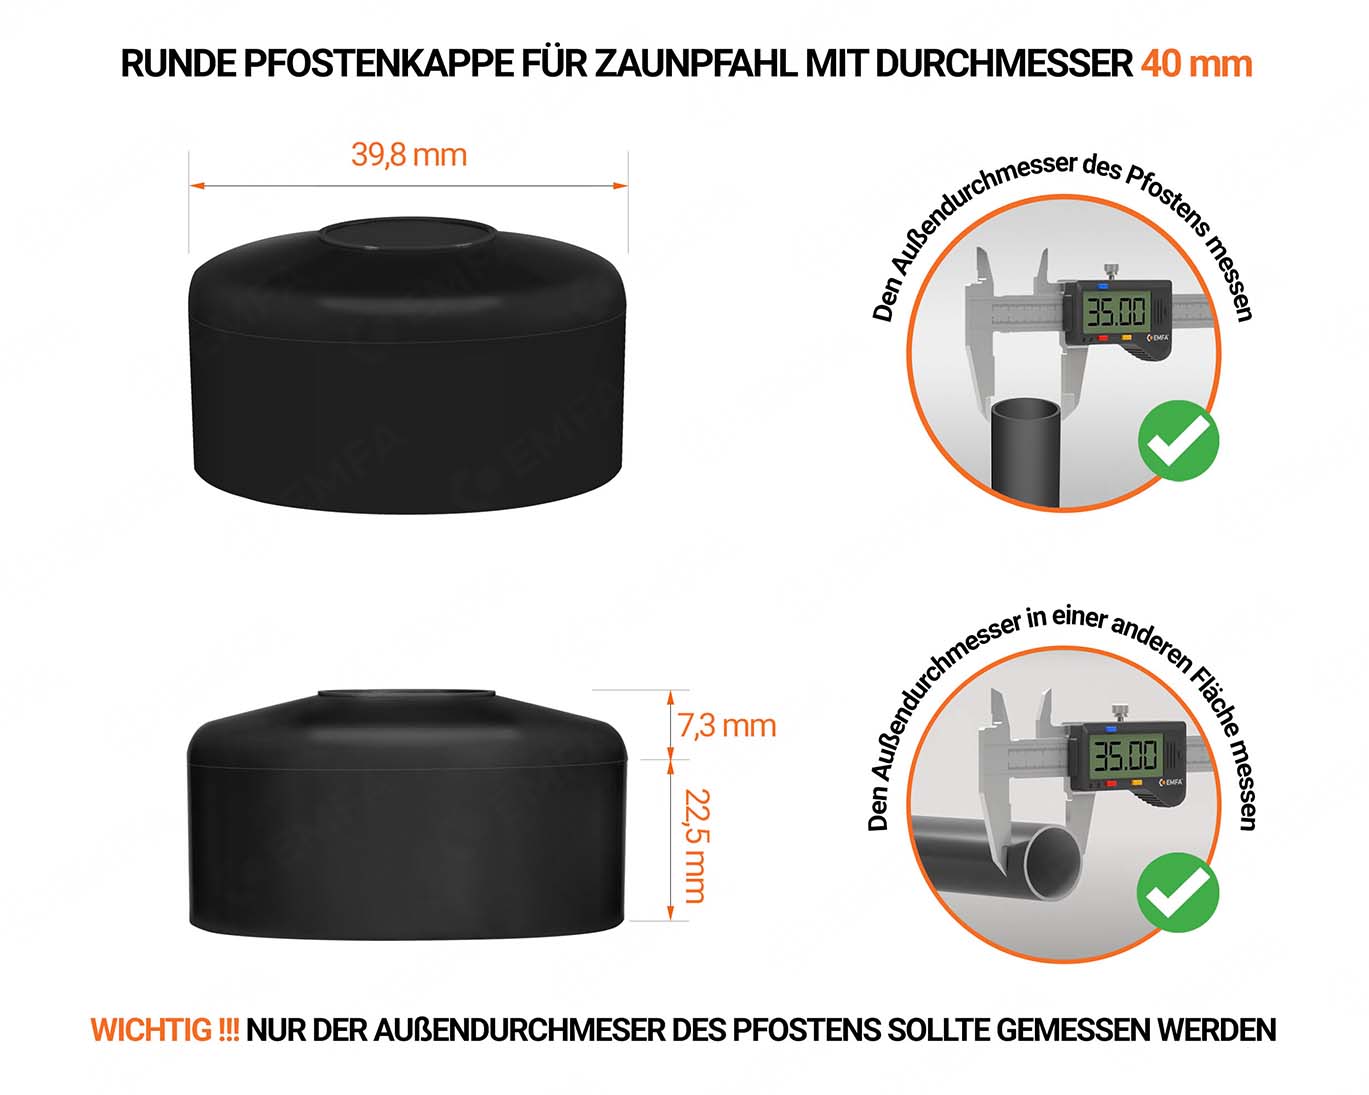 Schwarze Pfostenkappen rund für Pfostendurchmesser  40 mm mit technischen Abmessungen und Anleitung für korrekte Messung